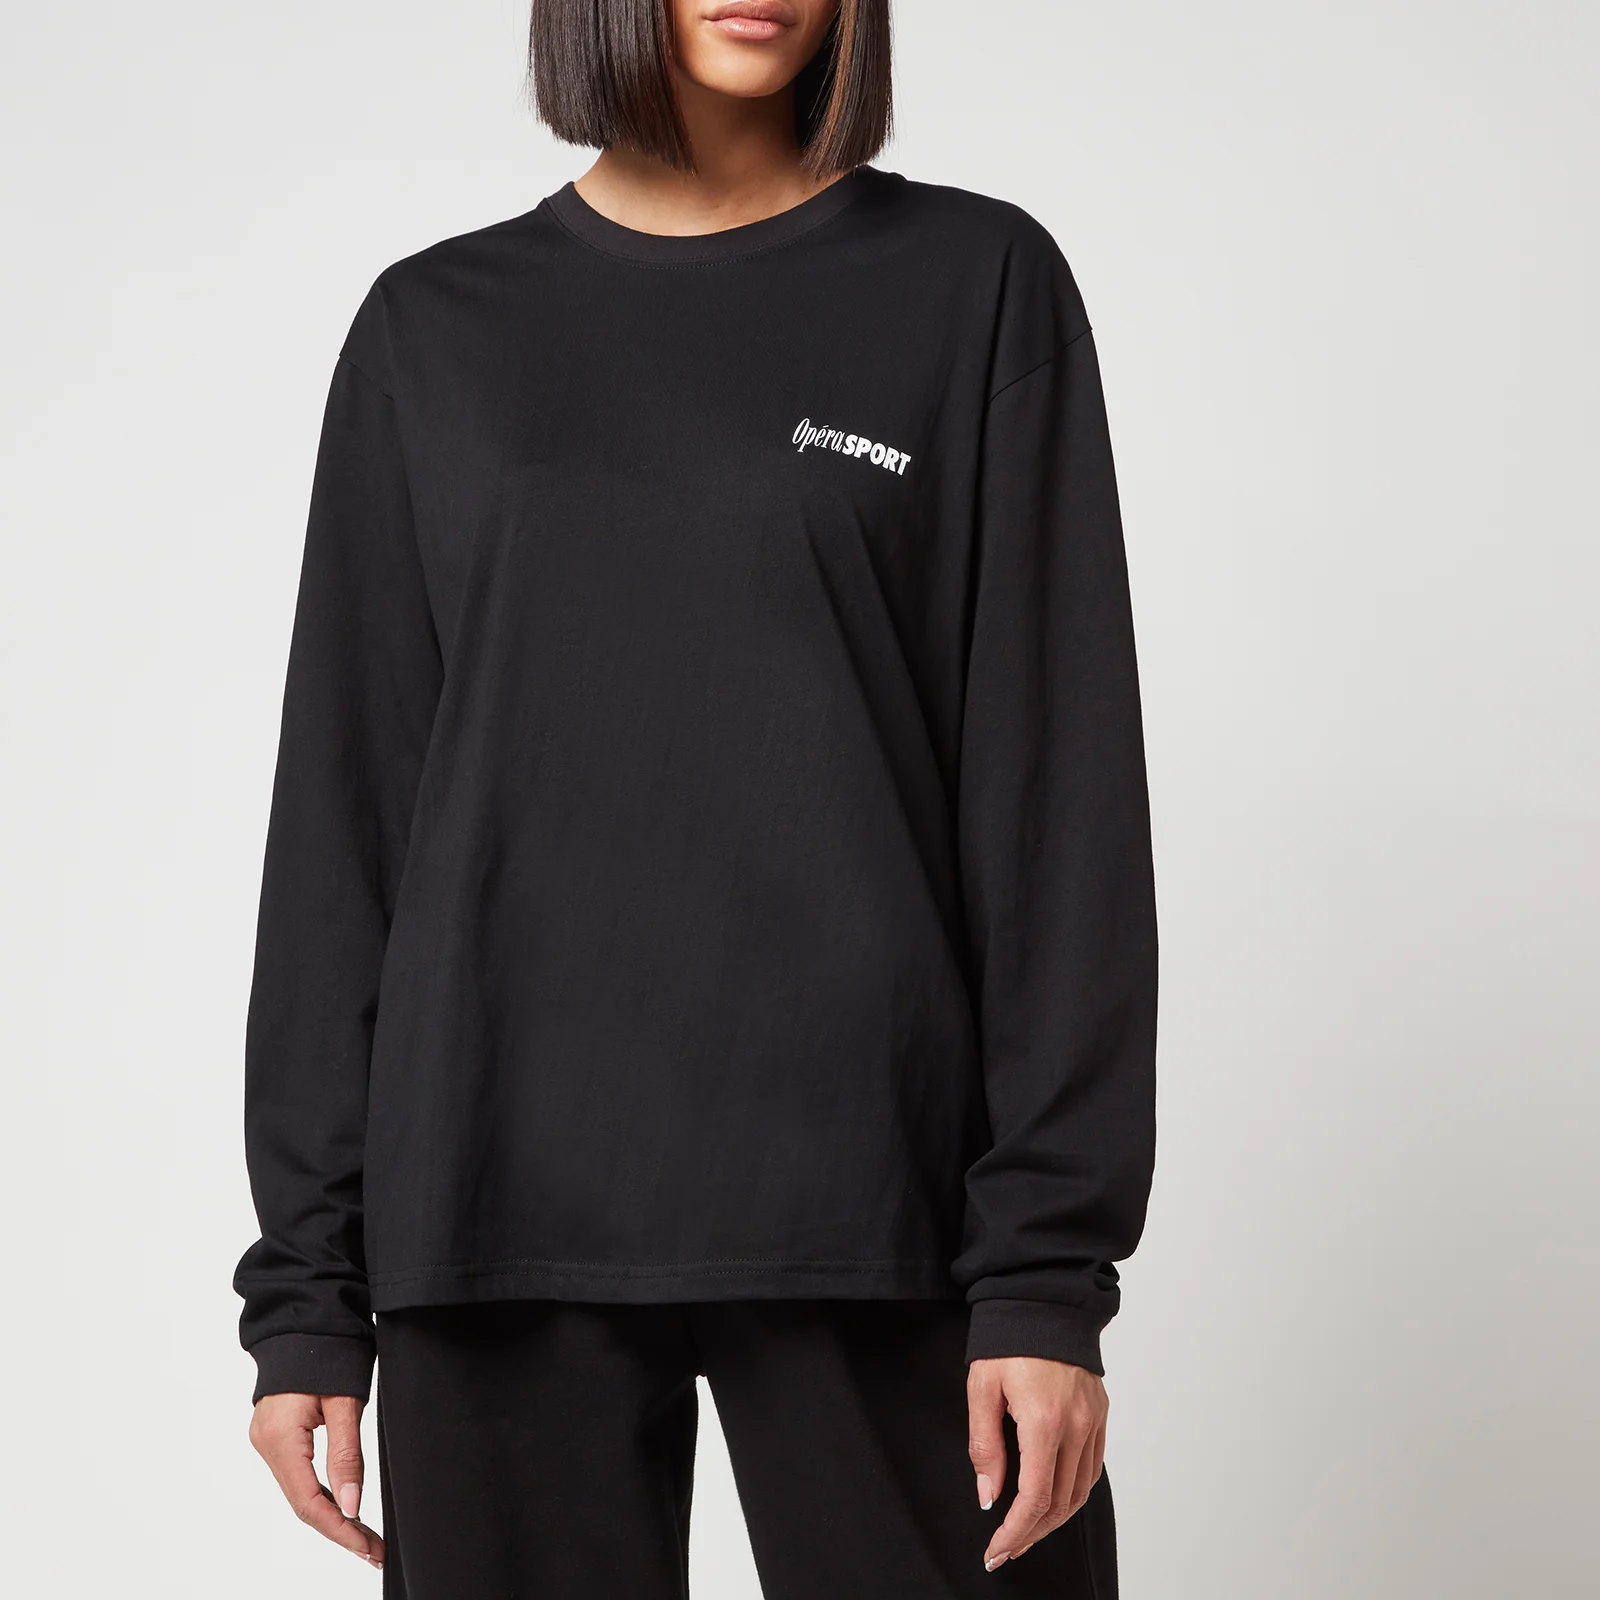 OpéraSPORT Women's Claudette Unisex Ls T-Shirt - Black Image 1